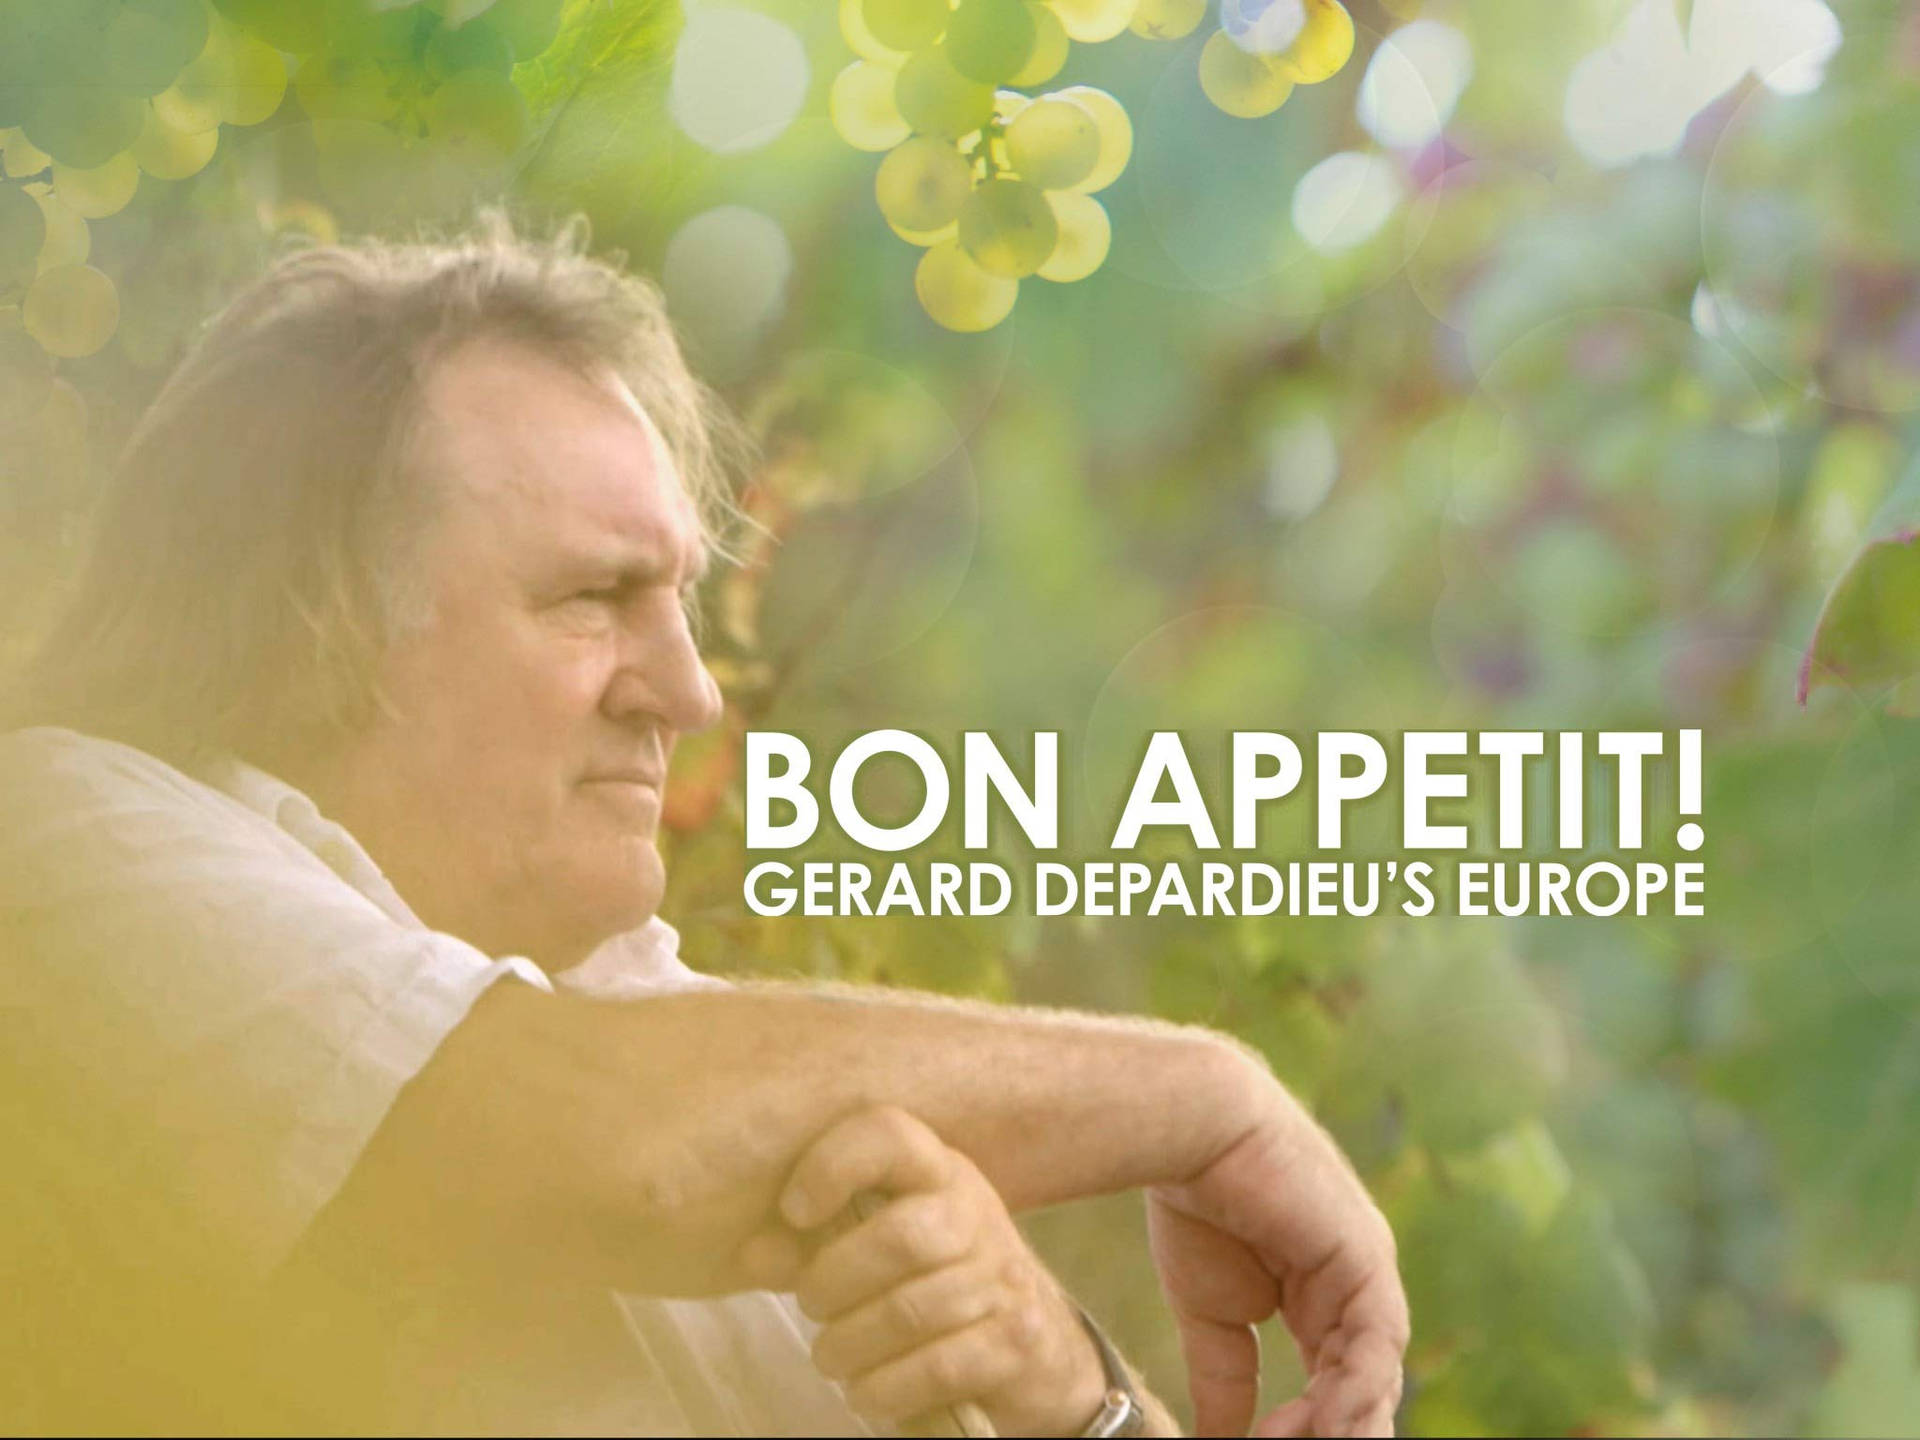 Gérarddepardieu Lämnar Bon Appetit. Wallpaper